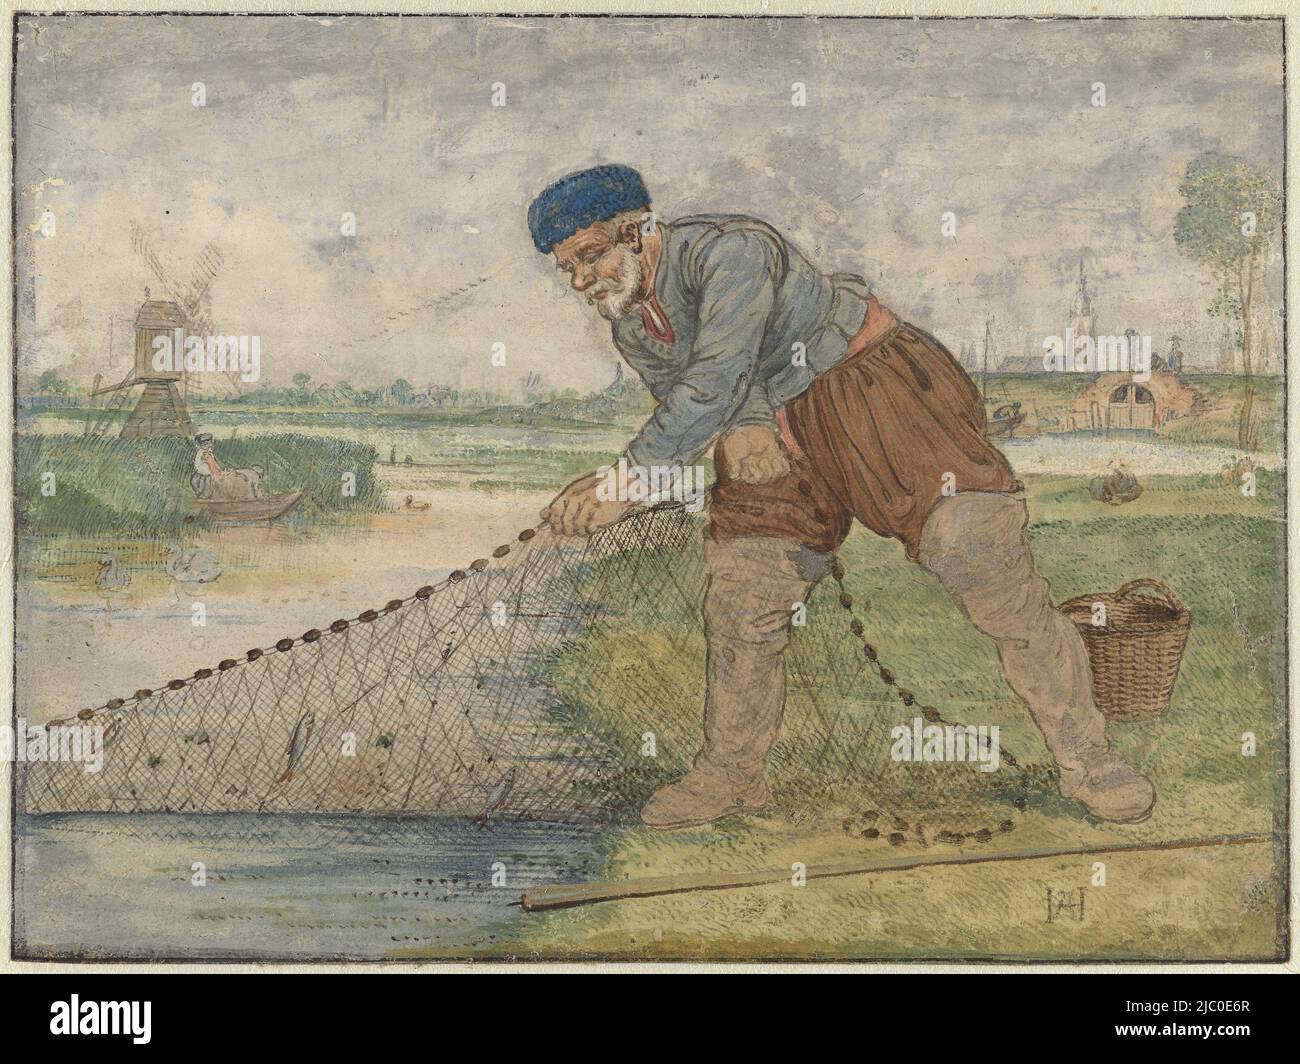 A Fisherman Hauling in HIS Net, rapporteur pour avis: Hendrick Avercamp, c. 1625 - c. 1630, papier, stylo, pinceau, h 145 mm × l 195 mm Banque D'Images